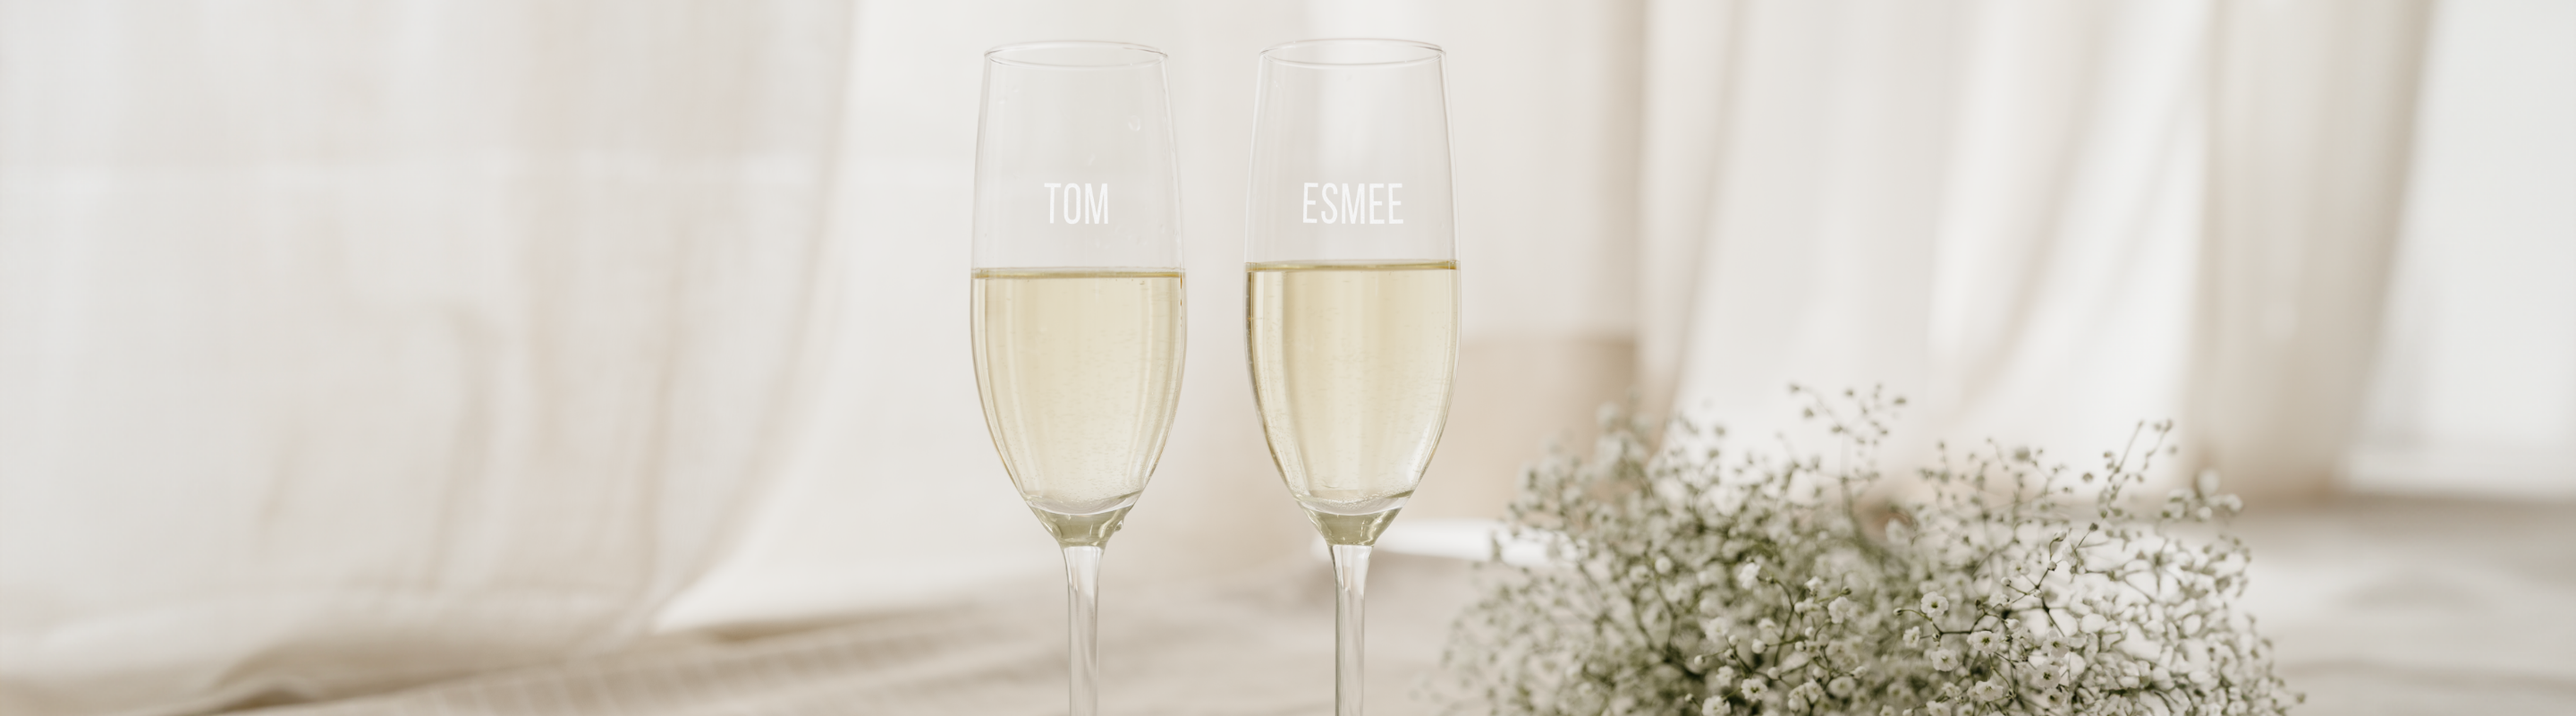 Gepersonaliseerde champagneglazen met gravering, namen Tom en Esmee, elegante glazen, perfect cadeau voor speciale gelegenheden, glas graveren